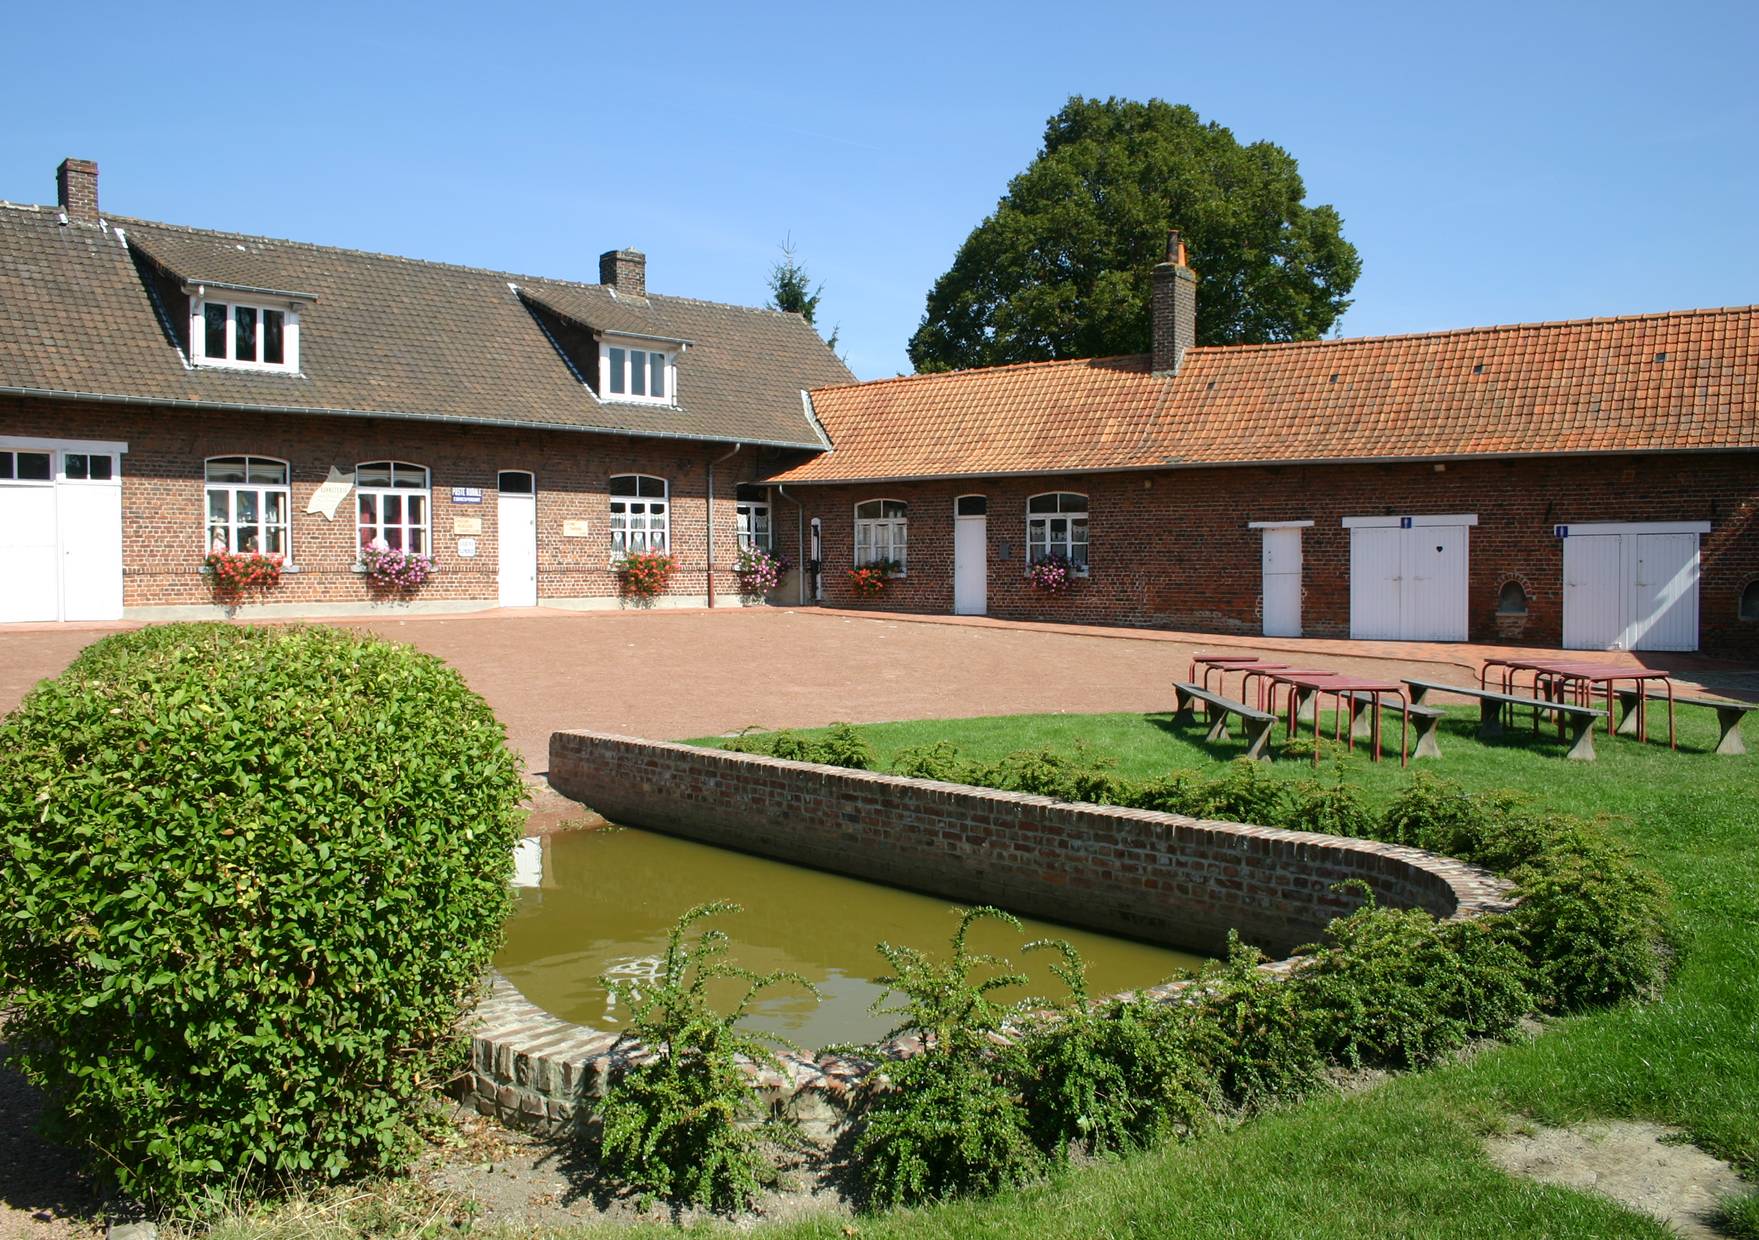 Musée de la vie rurale - Steenwerck